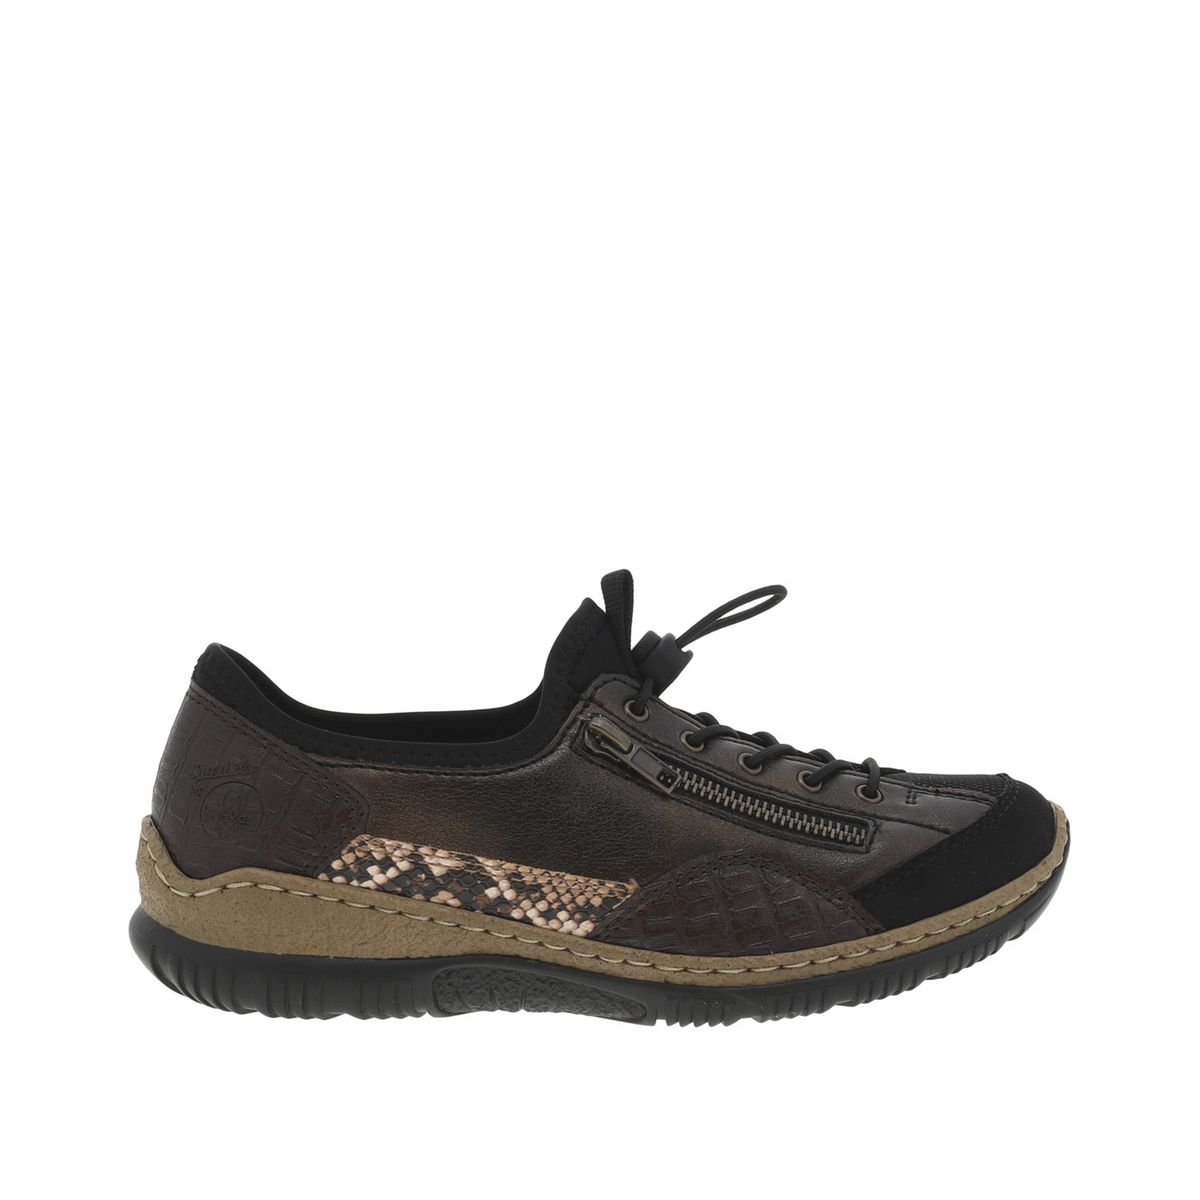 Rieker Sneaker Chaussure Lacée Basses Noir Gris 40-46 15817-00 neu19 